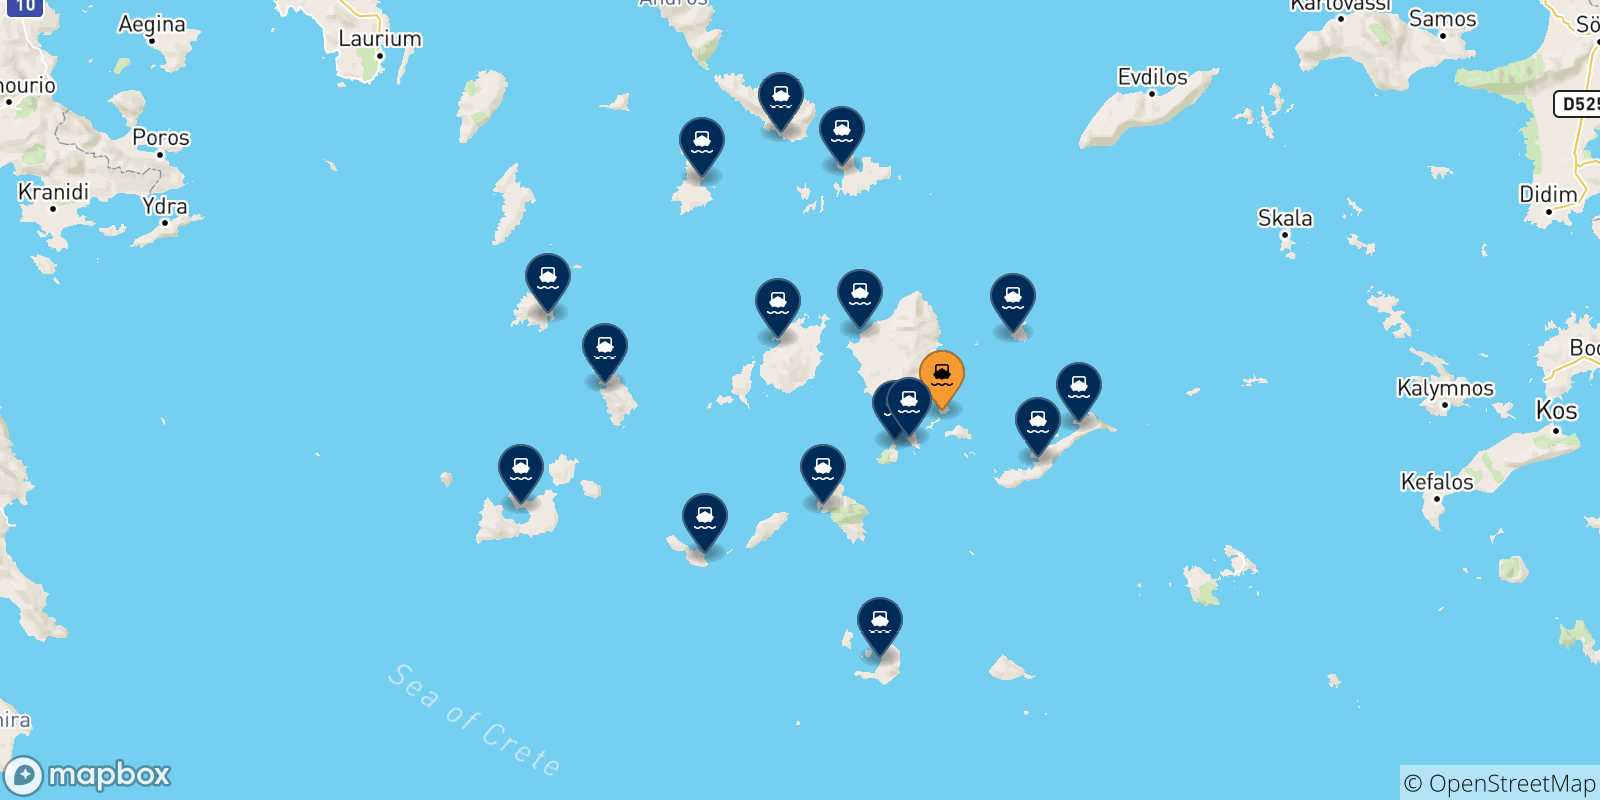 Mappa delle possibili rotte tra Koufonissi e le Isole Cicladi